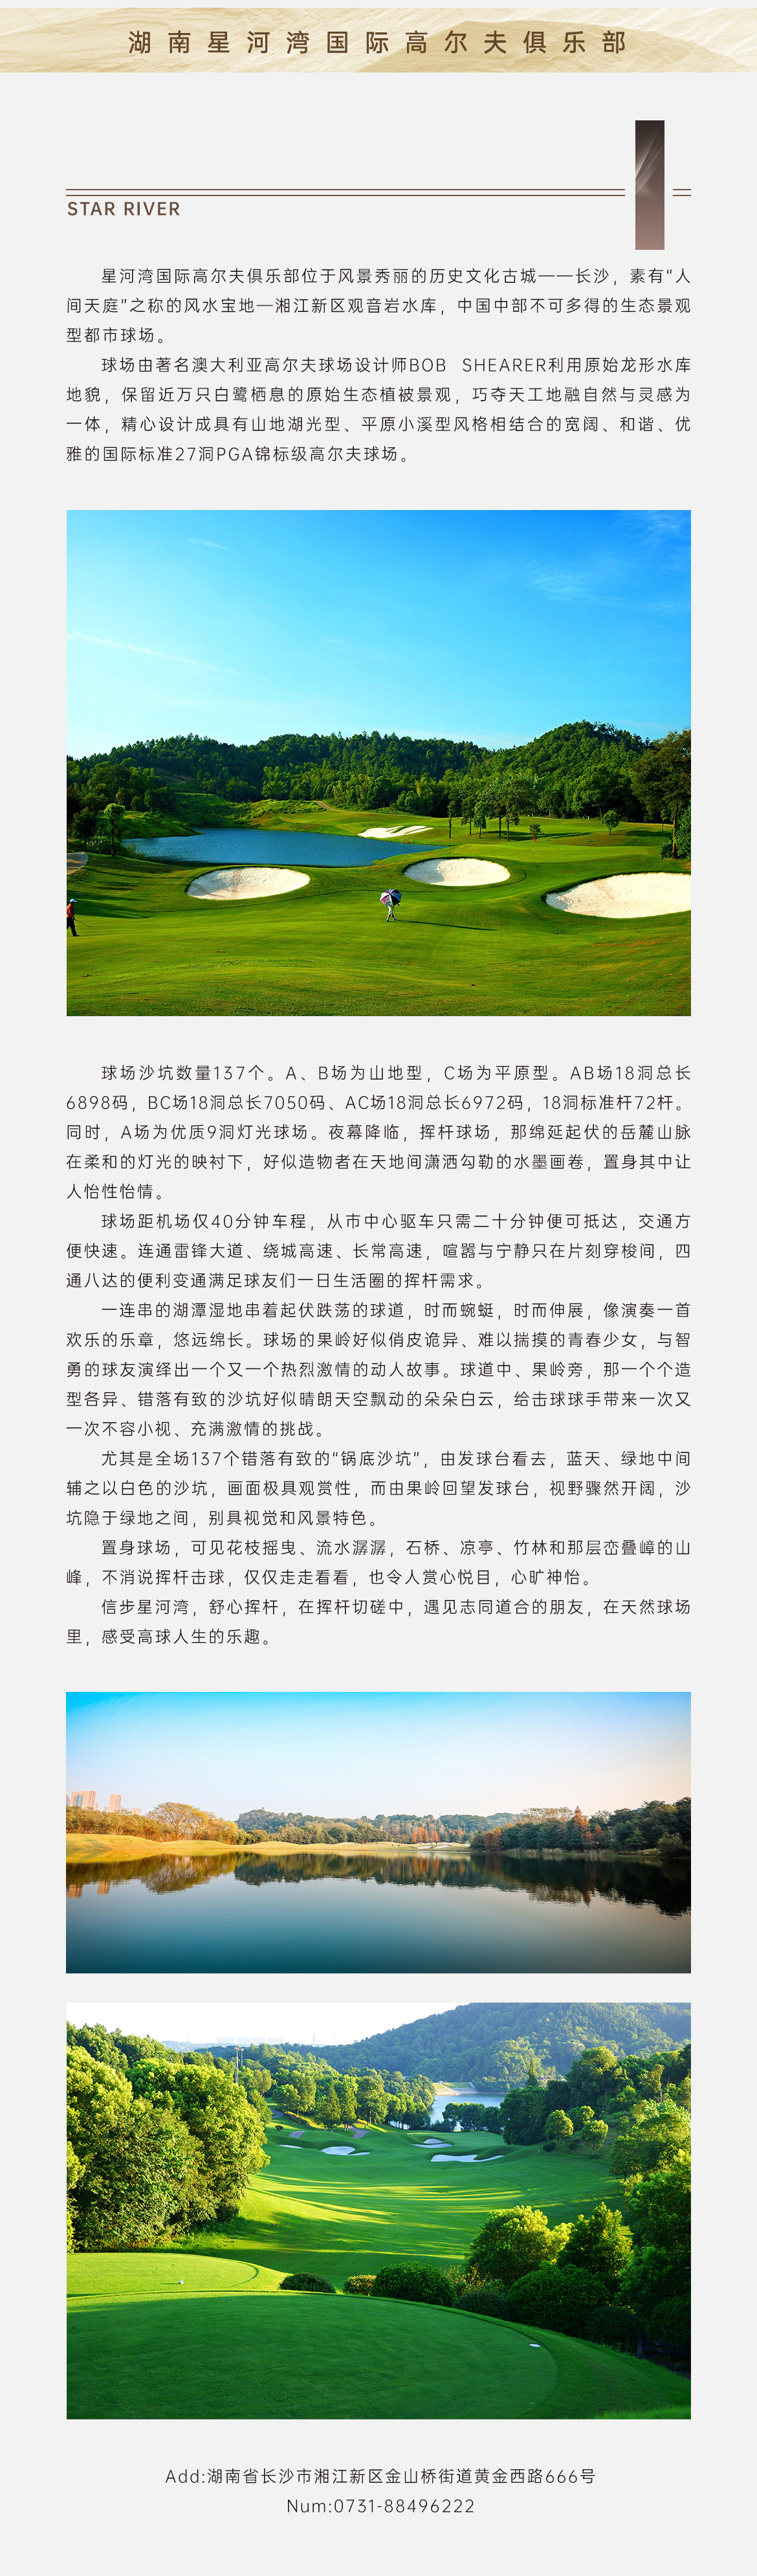 湖南星河湾国际高尔夫俱乐部.jpg